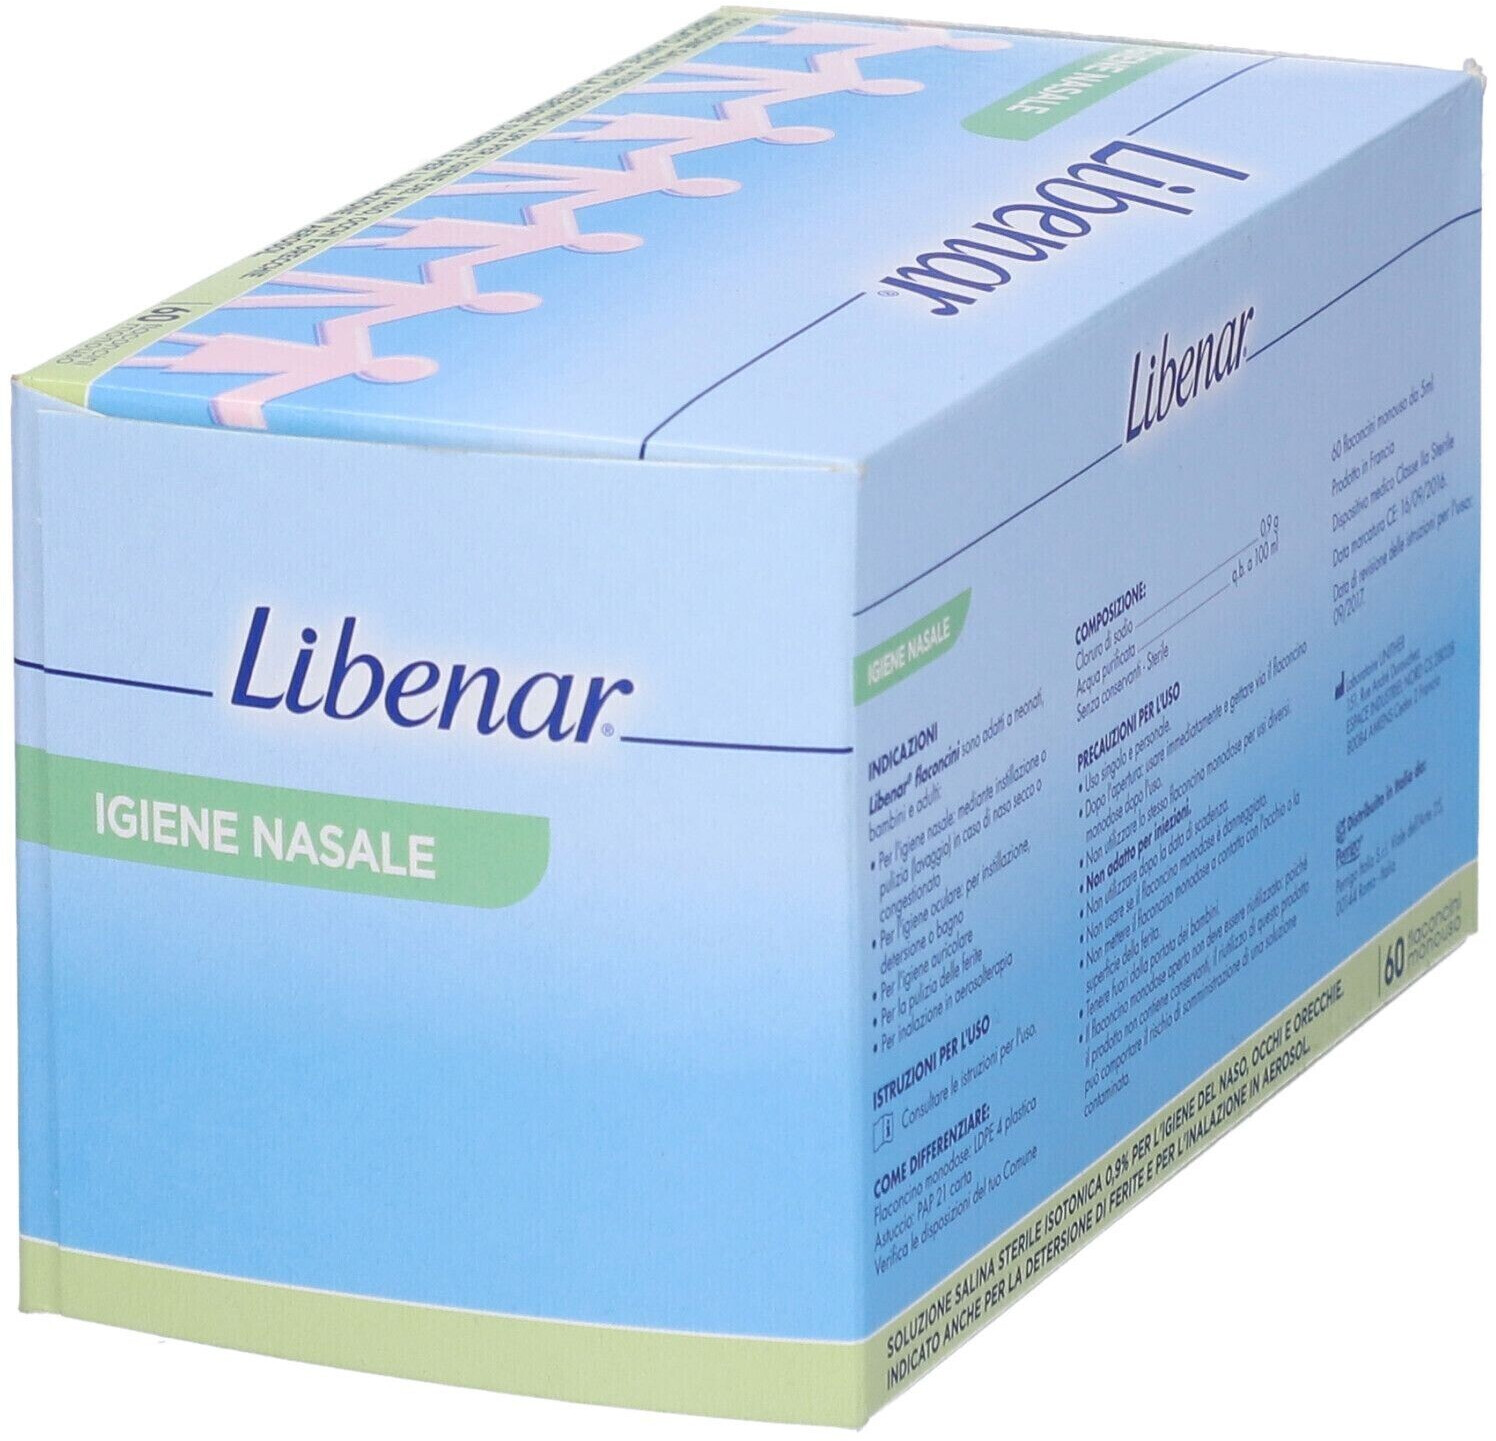 Libenar Iso Soluzione Fisiologica 60 fiale monodose - Para-Farmacia  Bosciaclub